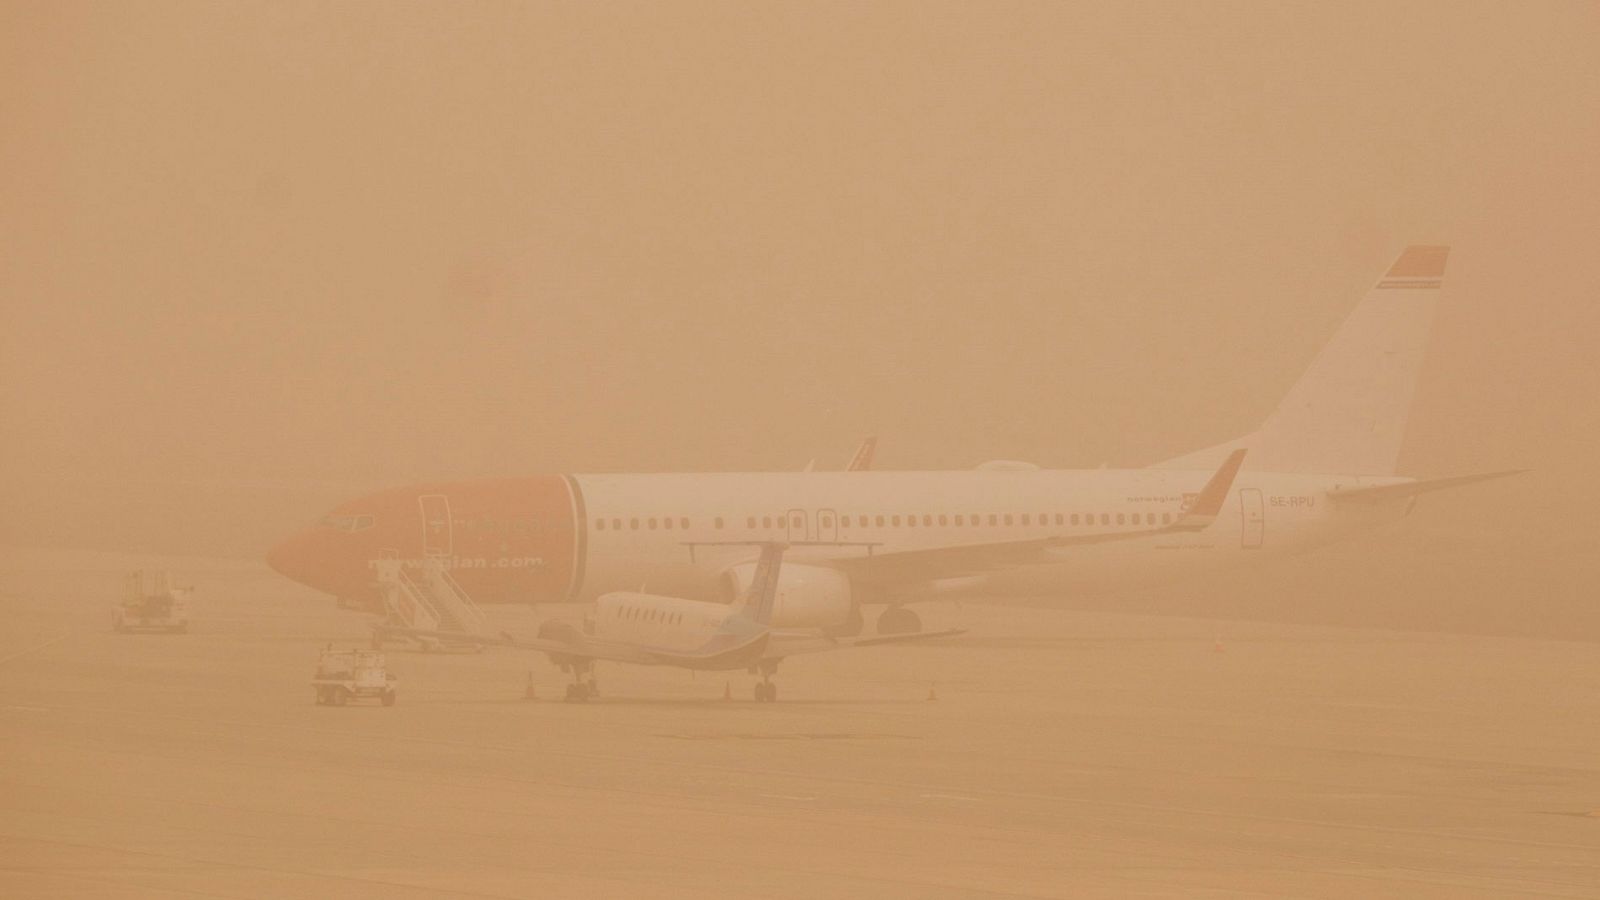   Aena comienza a operar con restricciones en los aeropuertos  de Canarias afectados por la calima y el viento   